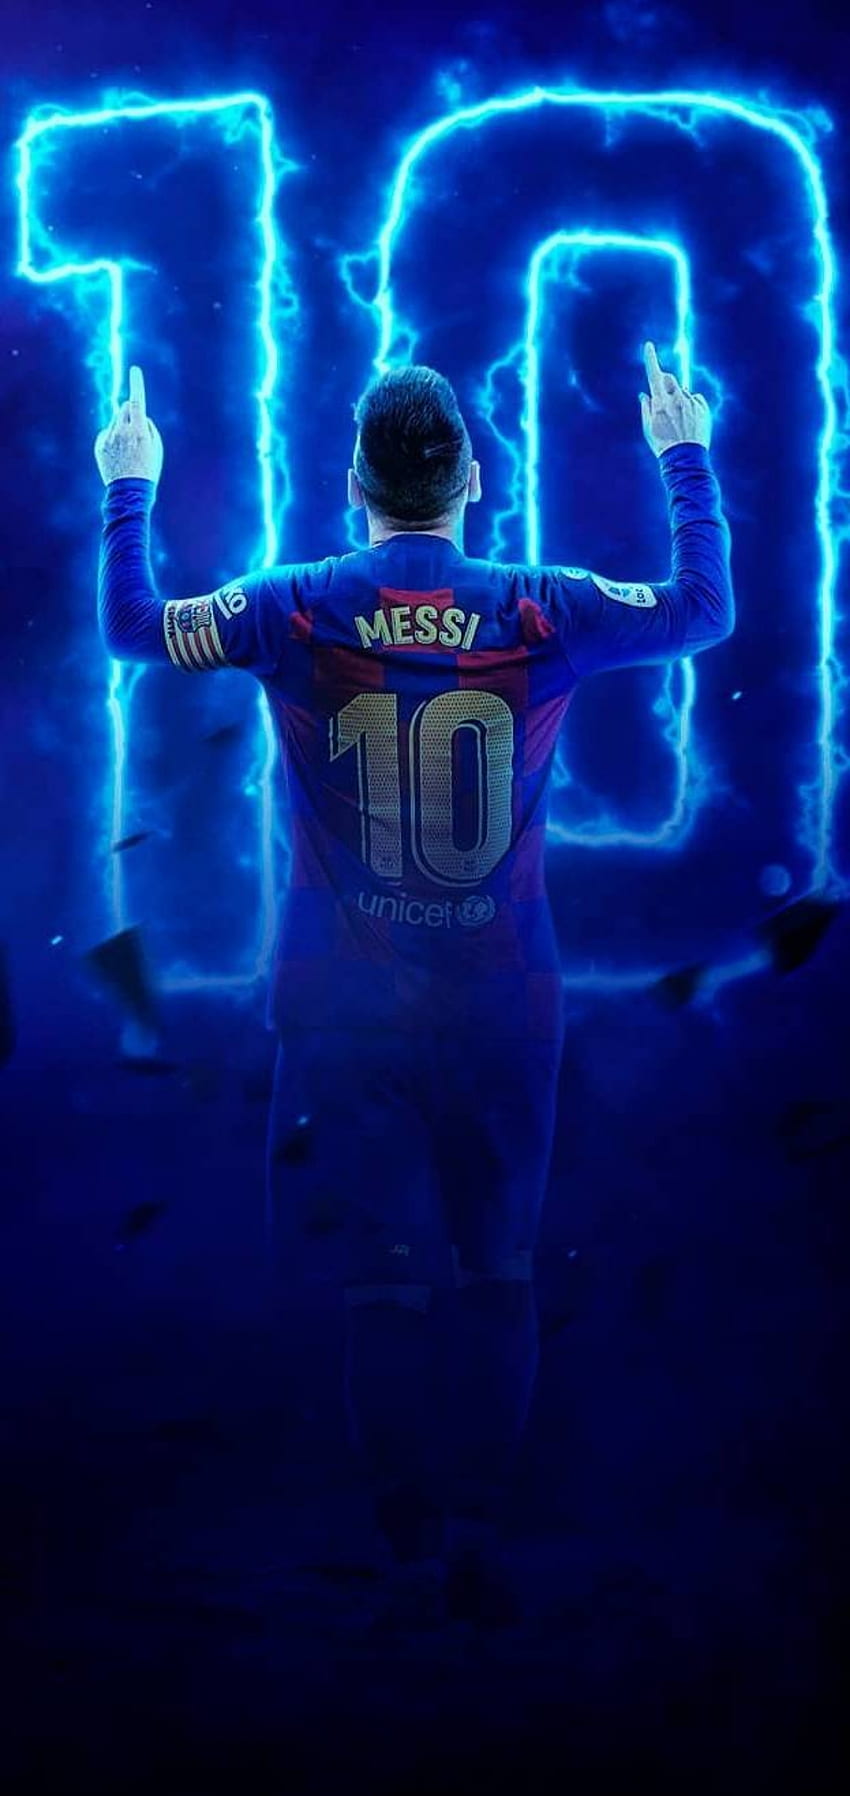 Hình nền Messi HD siêu đẹp - Tận hưởng nhiều hơn, ngắm nhìn Messi với hình nền HD siêu đẹp của chúng tôi. Chàng Messi sẽ xuất hiện thật nổi bật trên màn hình của bạn, giúp bạn có trải nghiệm tuyệt đẹp khi sử dụng điện thoại hay máy tính bảng.